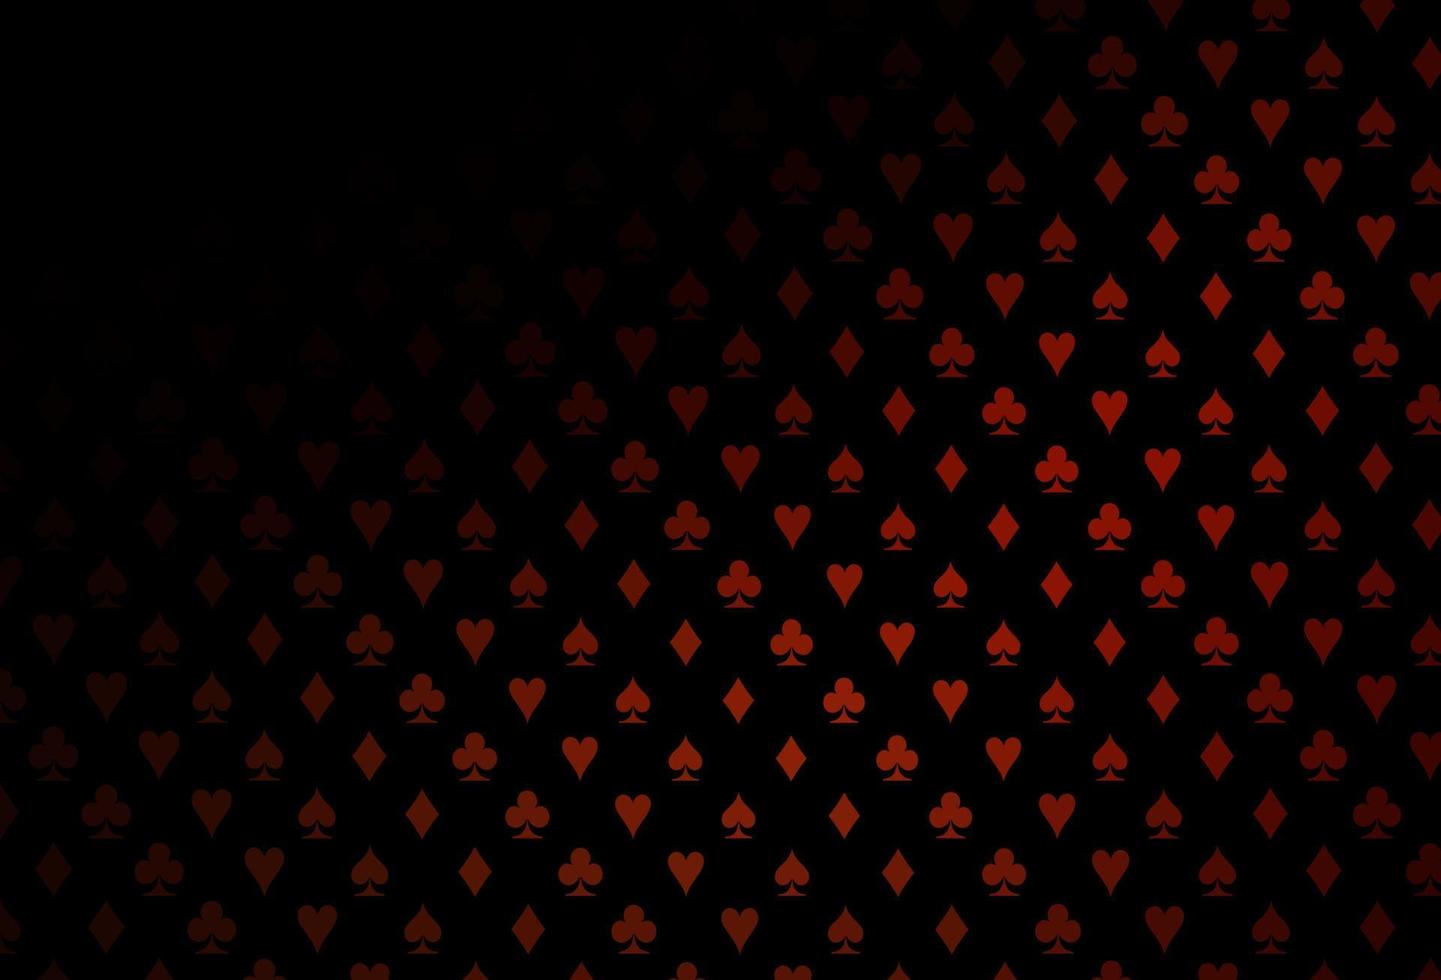 diseño de vector rojo oscuro con elementos de tarjetas.